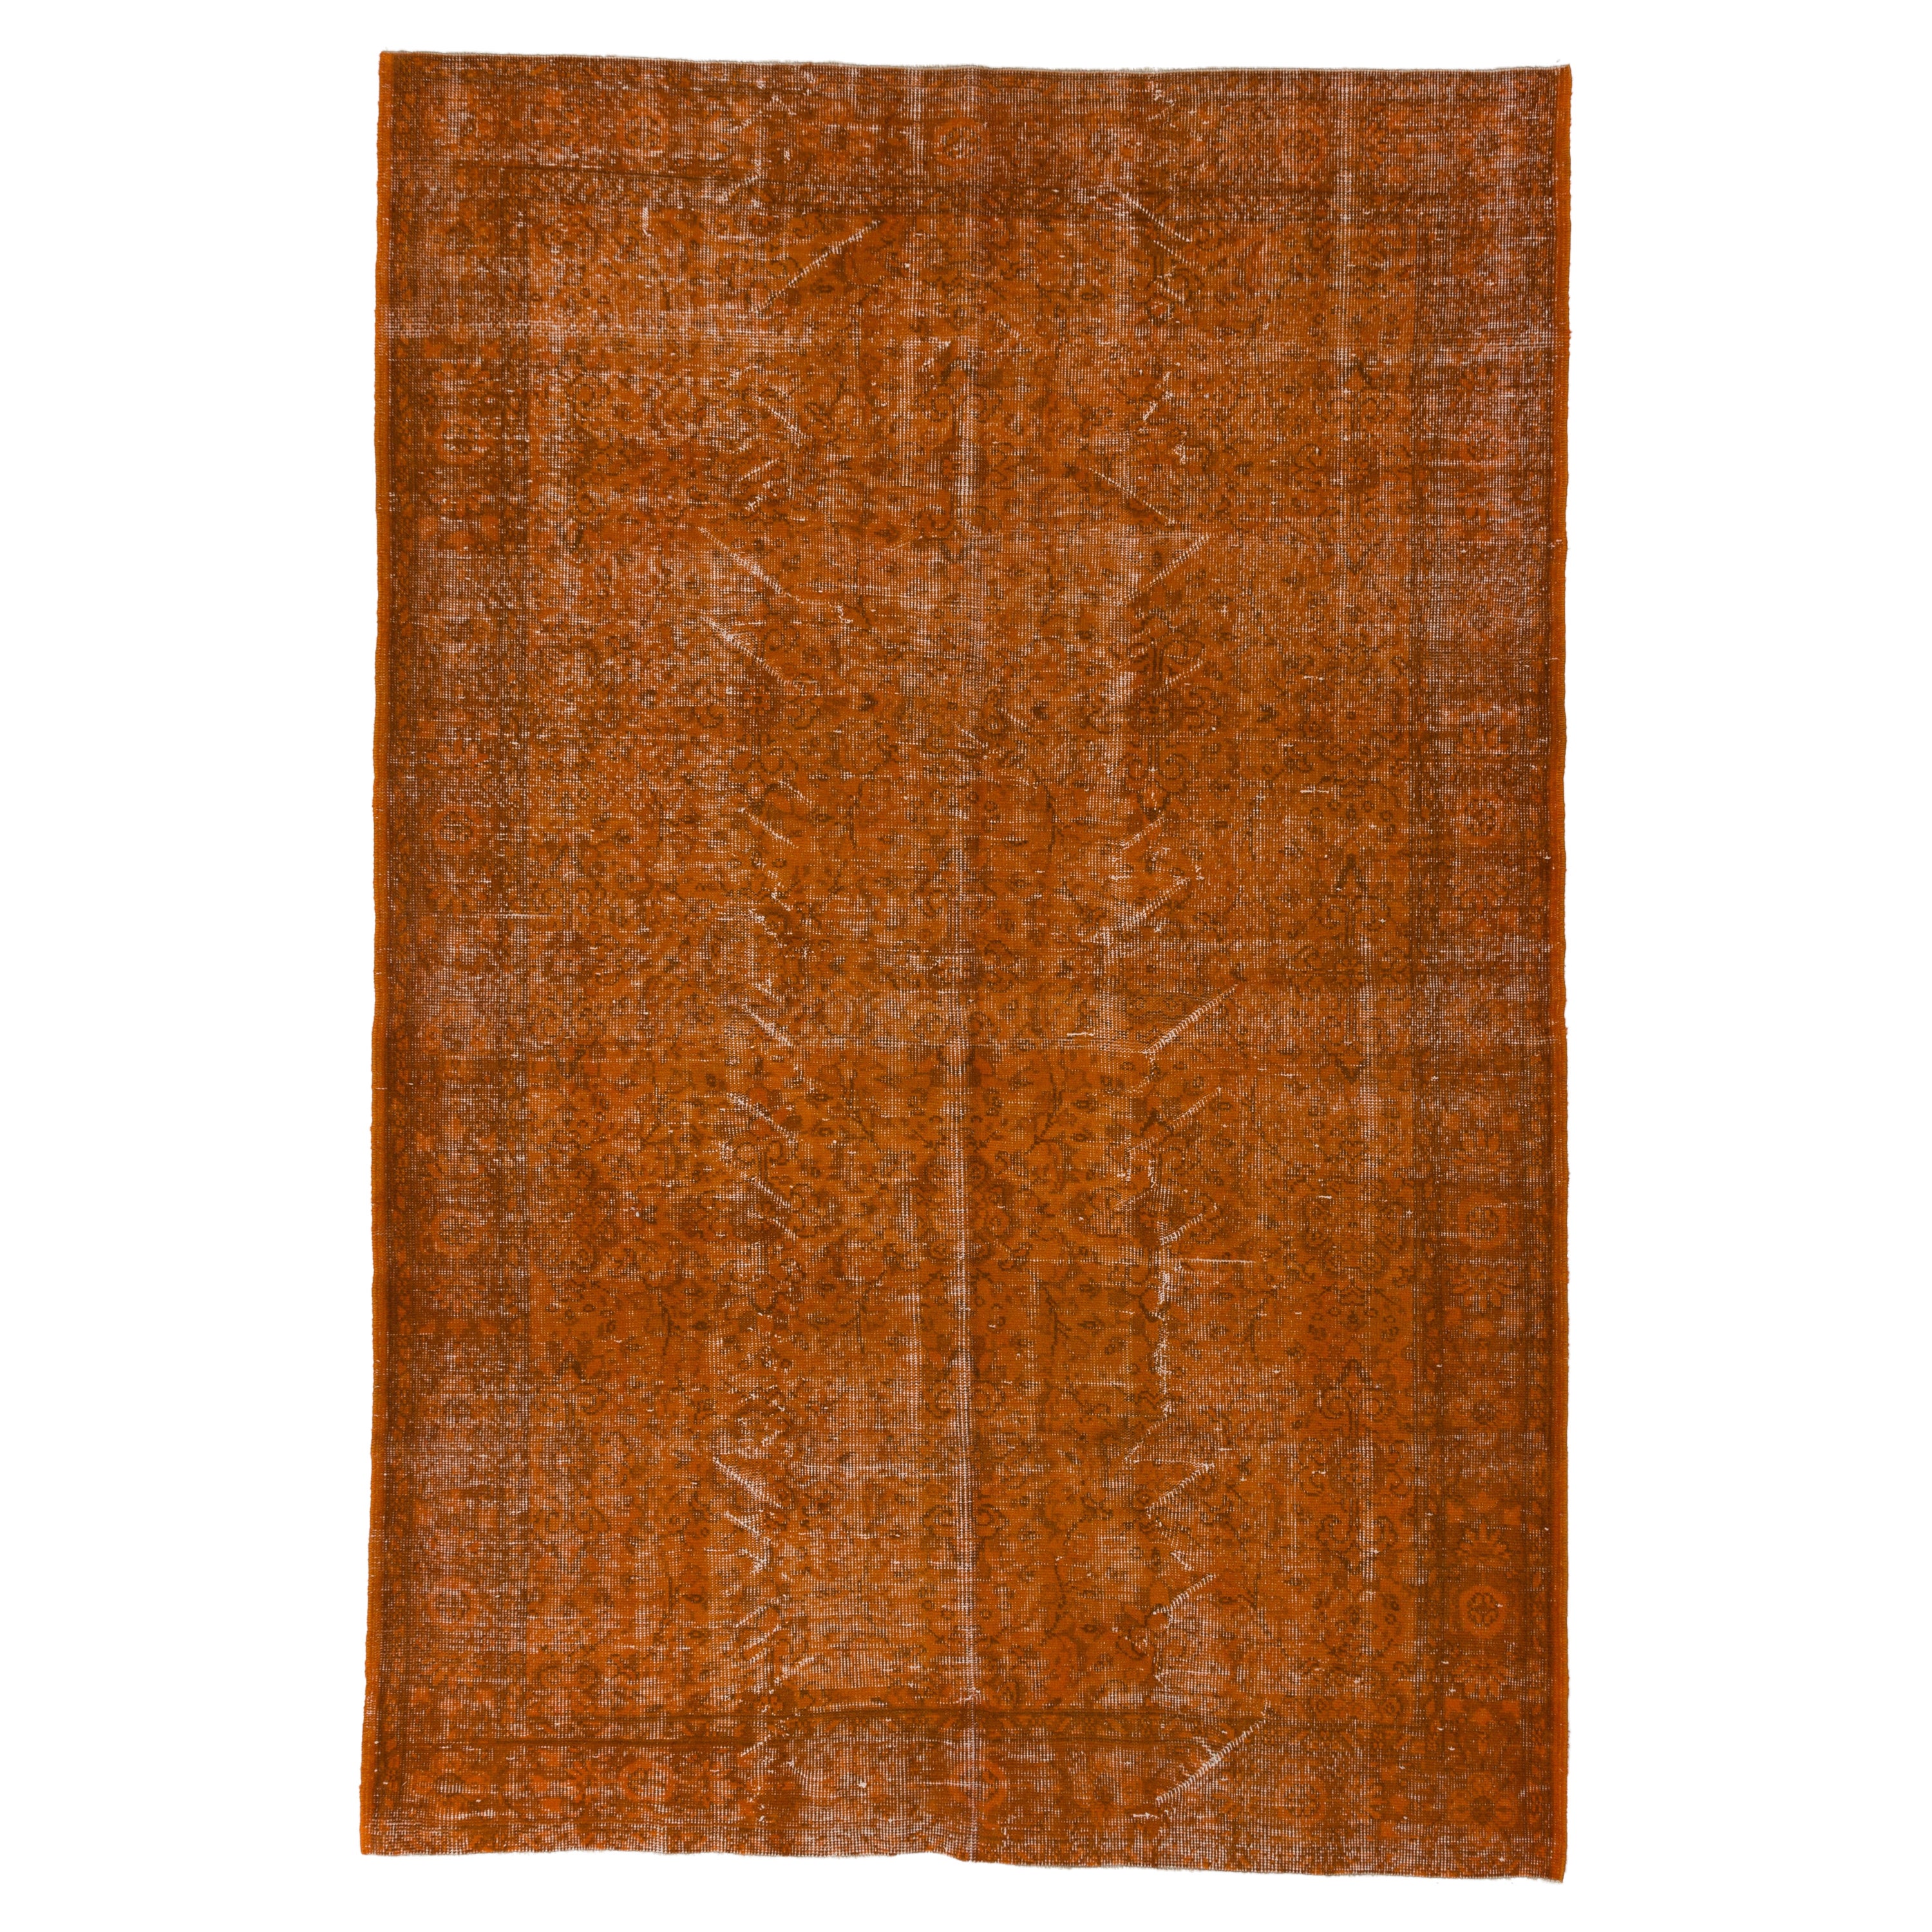 5.7x8.7 Ft Orange Modern Handmade Anatolian Area Rug. Wollteppich aus der Jahrhundertmitte